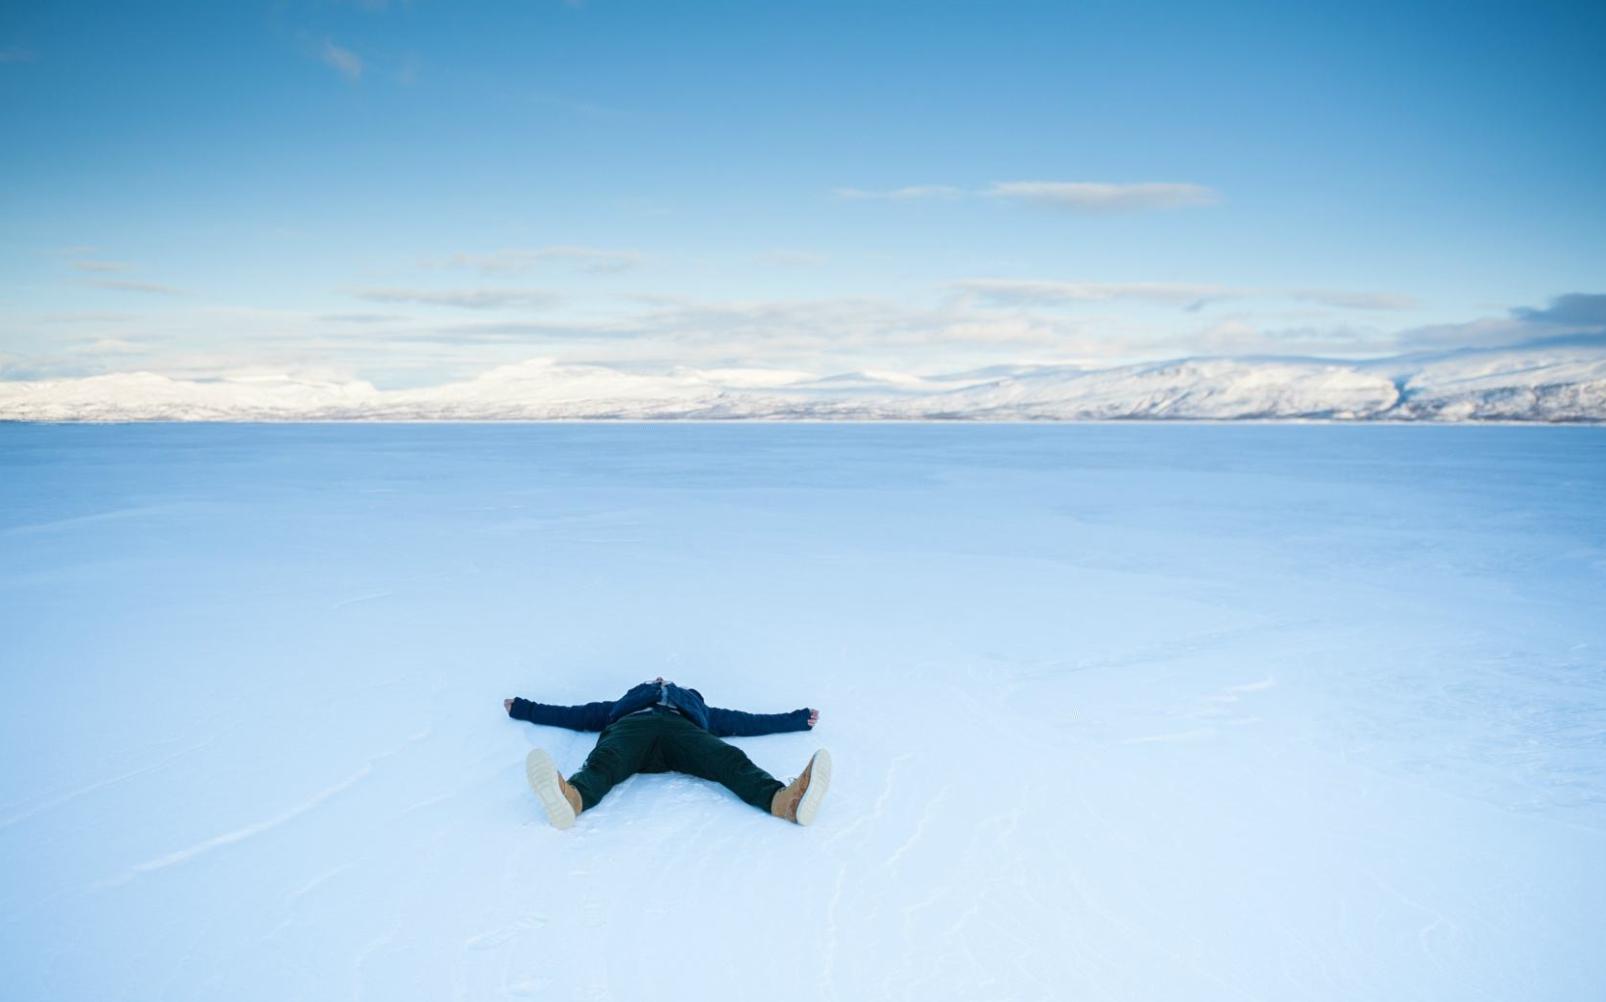 【世界旅游列表】去瑞典北部看极光 睡冰床 还有二哈队带你雪地溜达